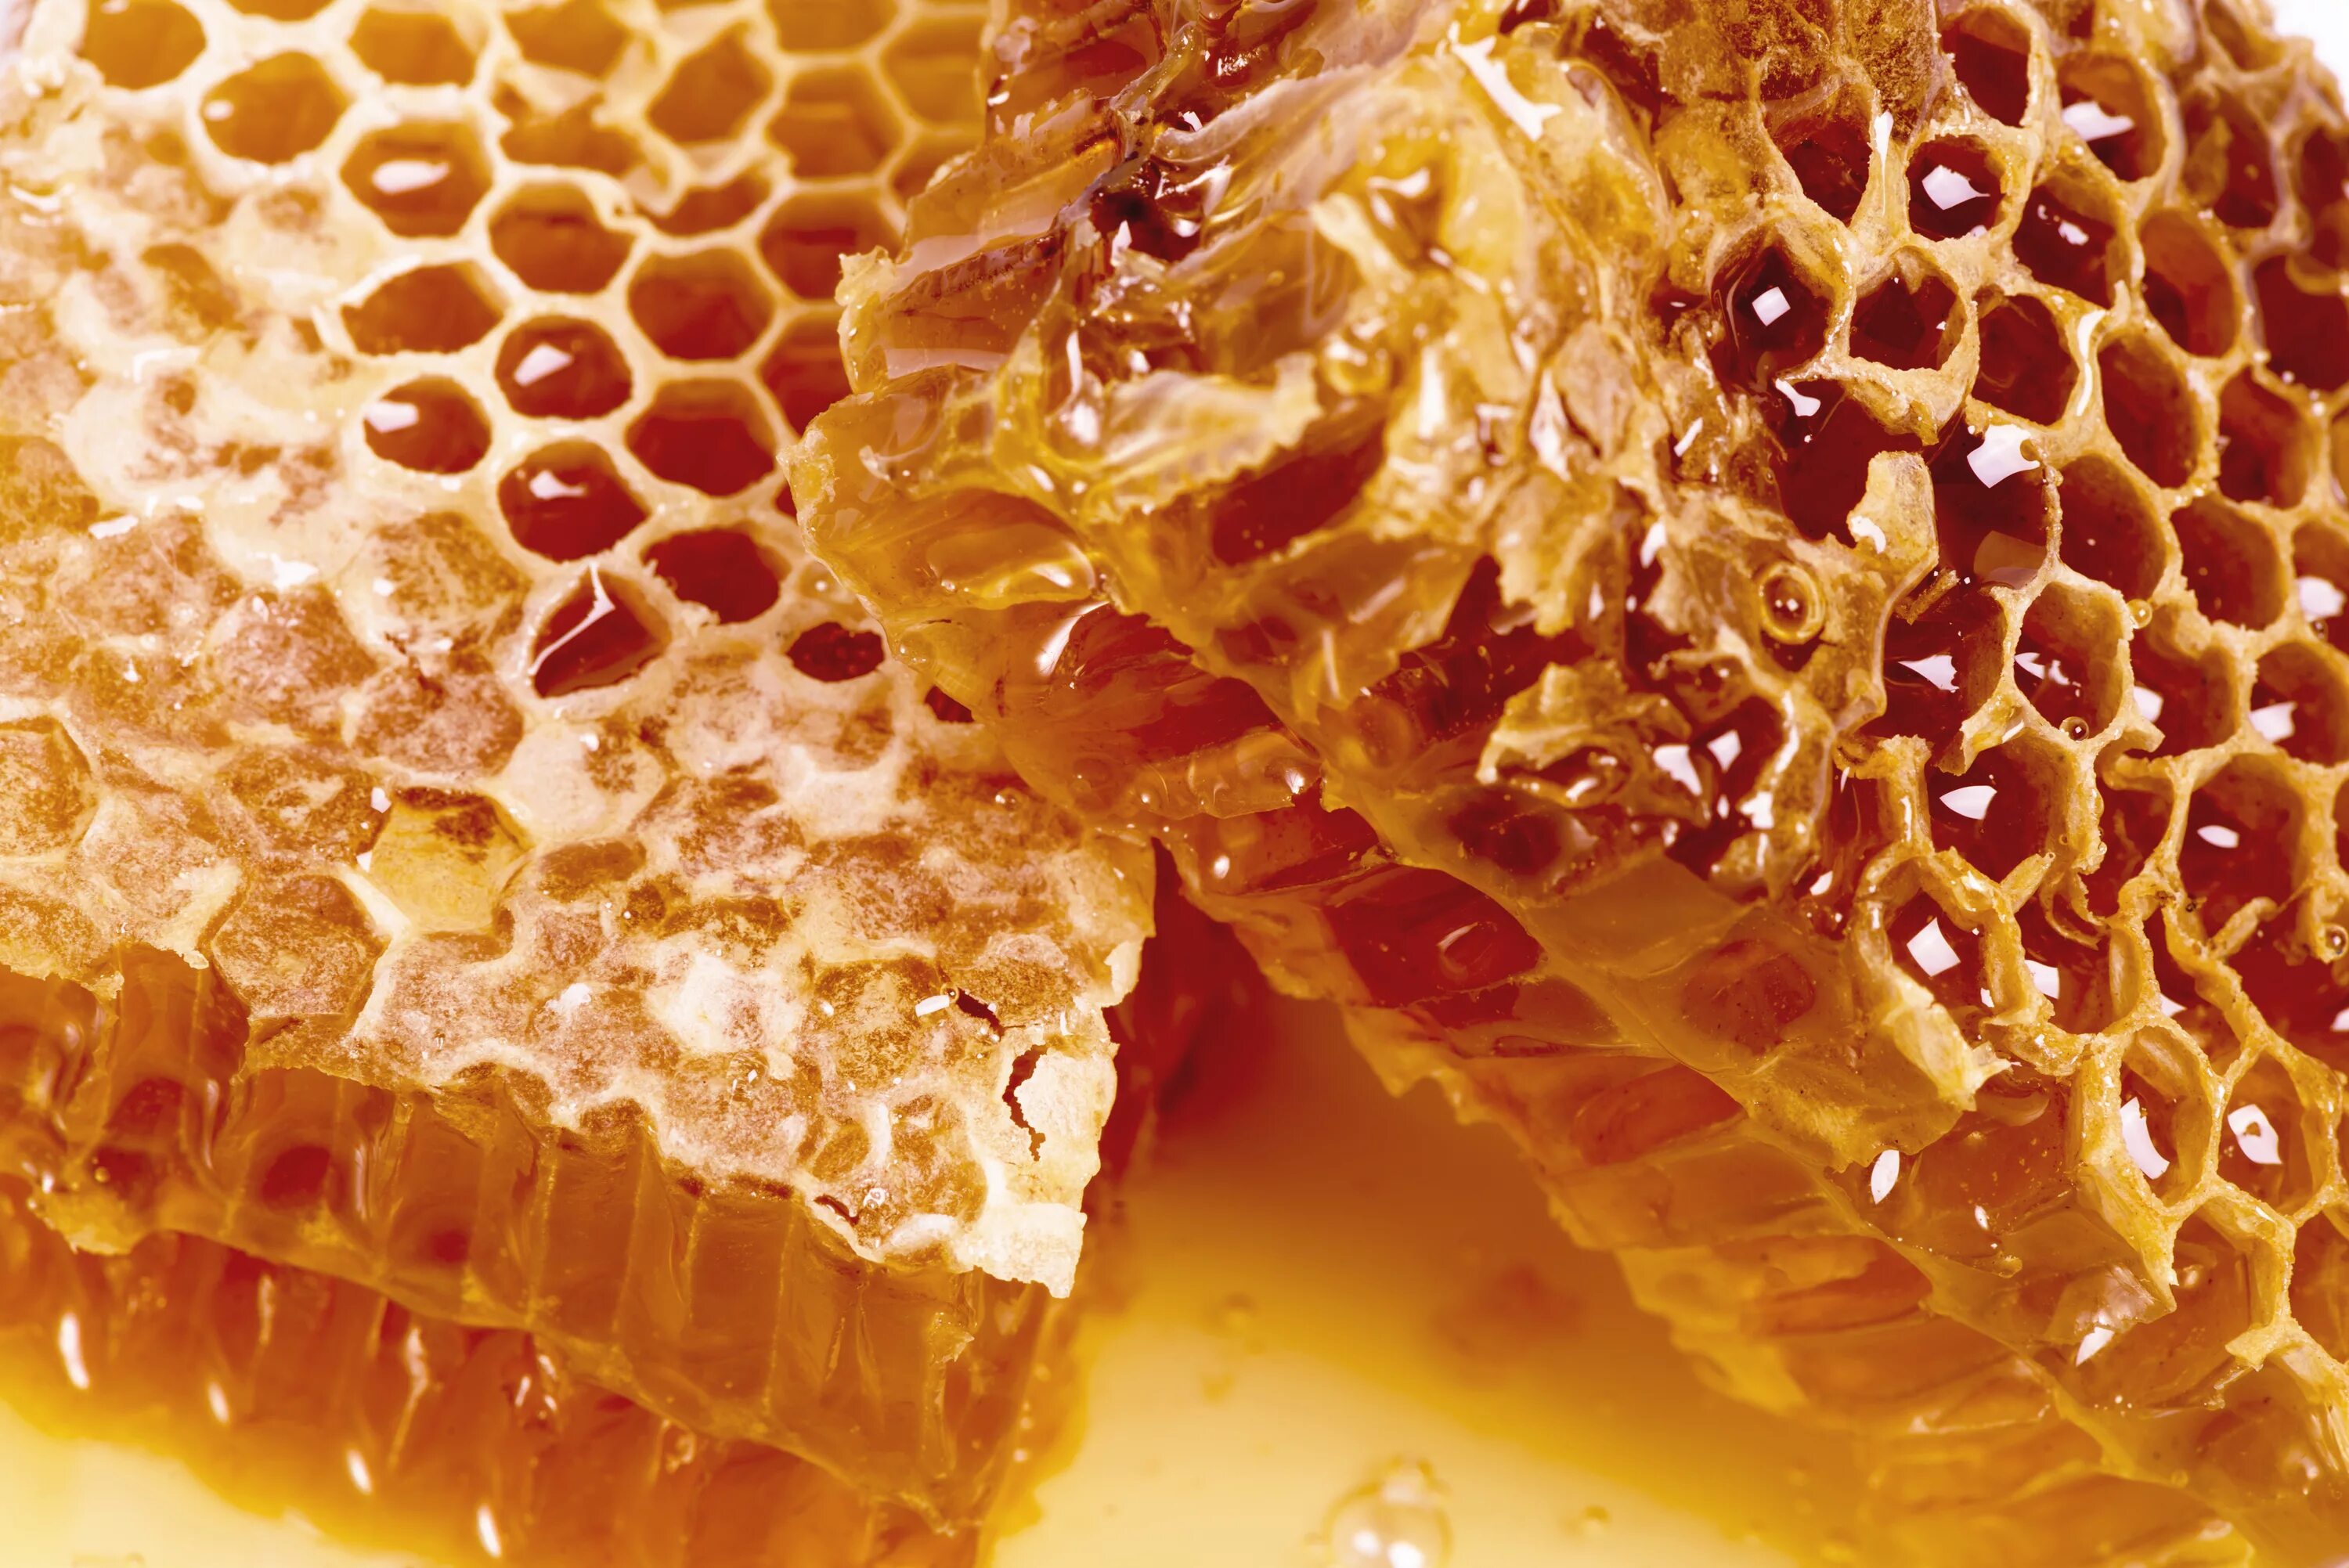 Honey com. Мёд в сотах. Соты пчелиные. Пчелиные соты с медом. Пчелиный воск.